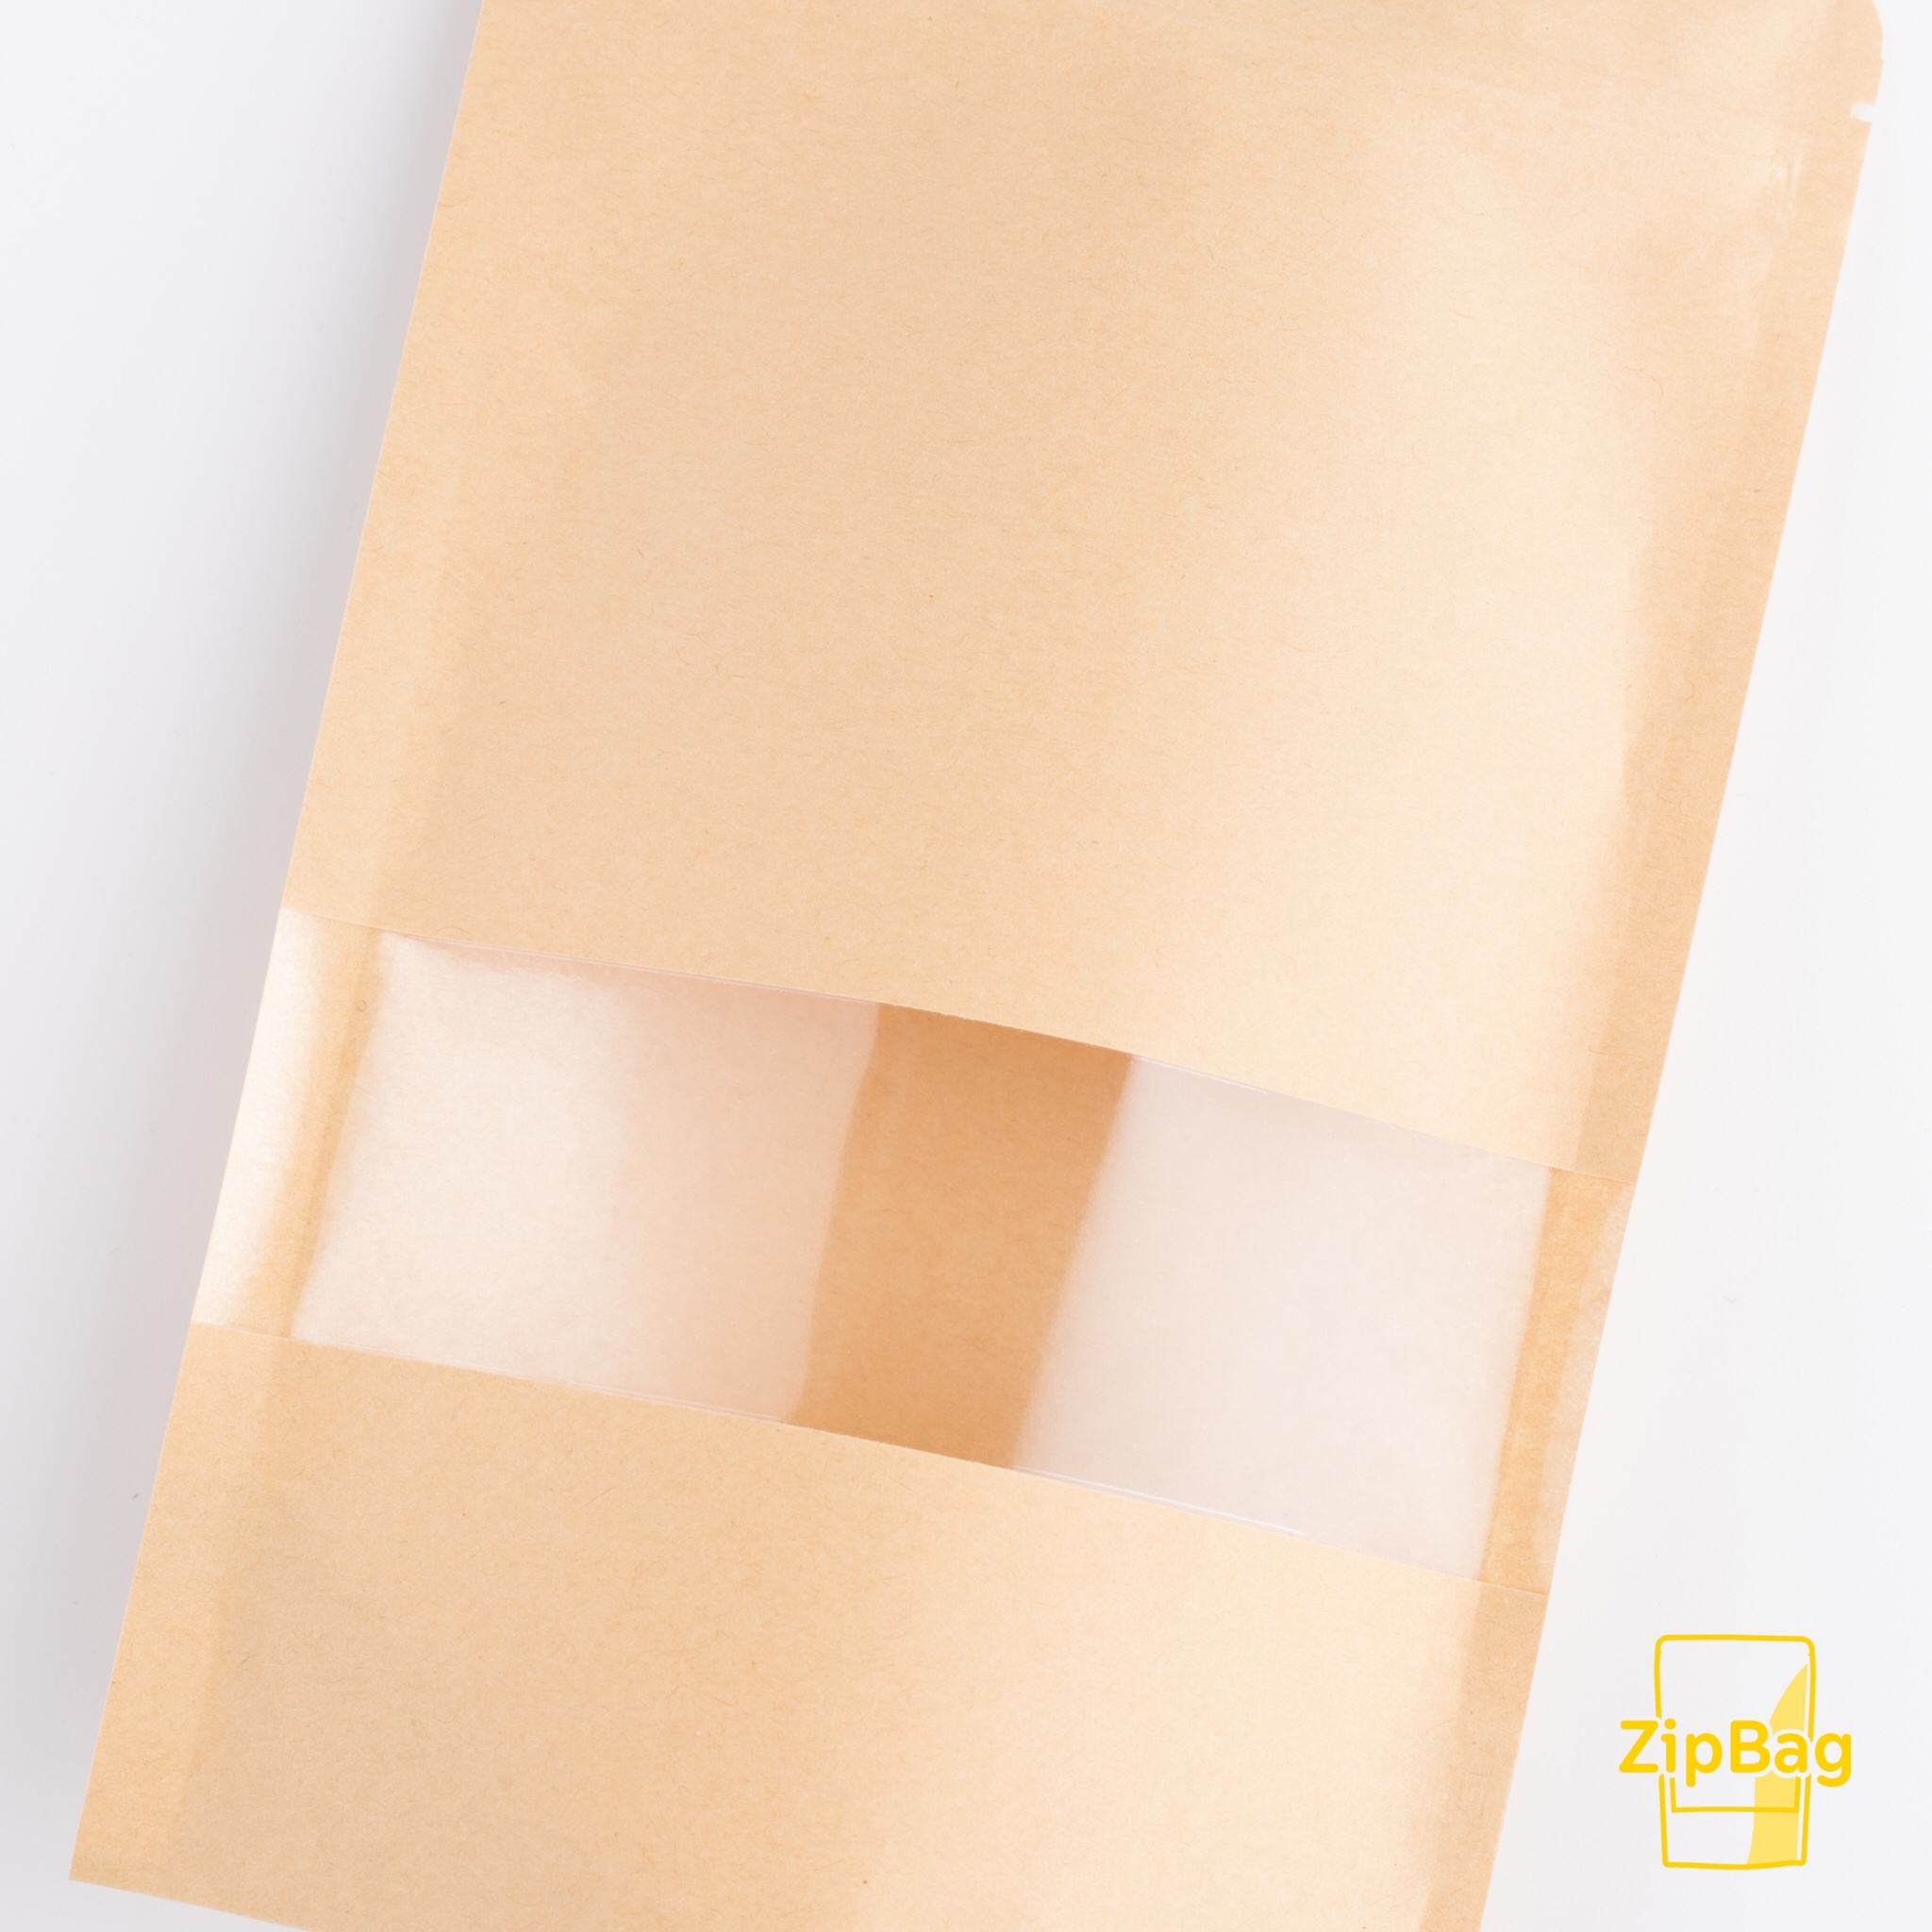 ถุงซิบล็อค（Ziplock Bag）ถุงกระดาษคราฟท์สีน้ำตาลหน้าต่างใส มีก้น ตั้งได้ ใส่ขนม อาหาร จำนวน 50 ใบ สี ขนาด 10x15+3 ซม. สี ขนาด 10x15+3 ซม.